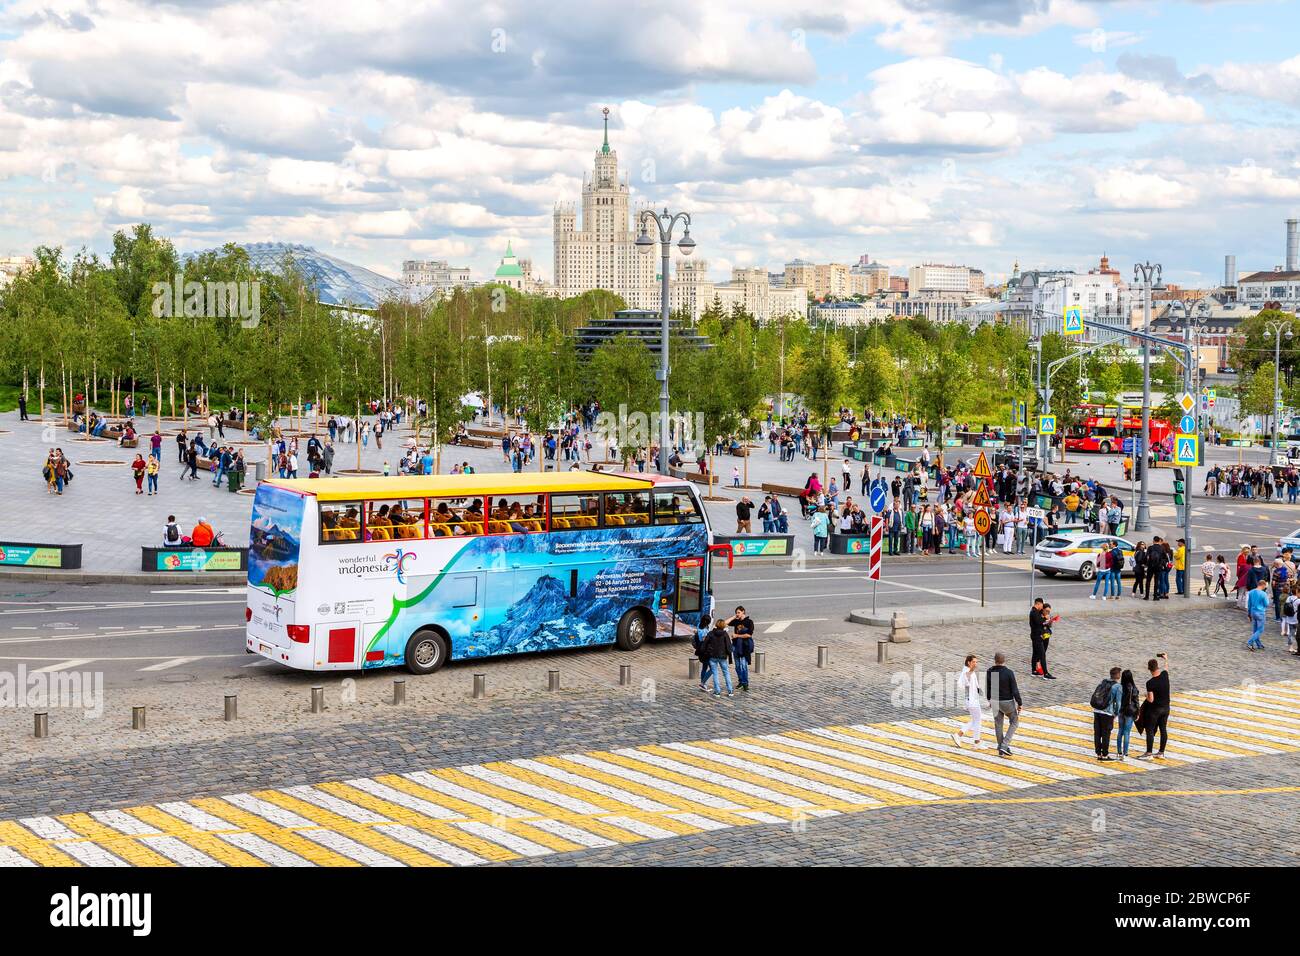 Mosca, Russia - 7 luglio 2019: Autobus City Sightseeing parcheggiato vicino al parco Zaryadye in una soleggiata giornata estiva Foto Stock